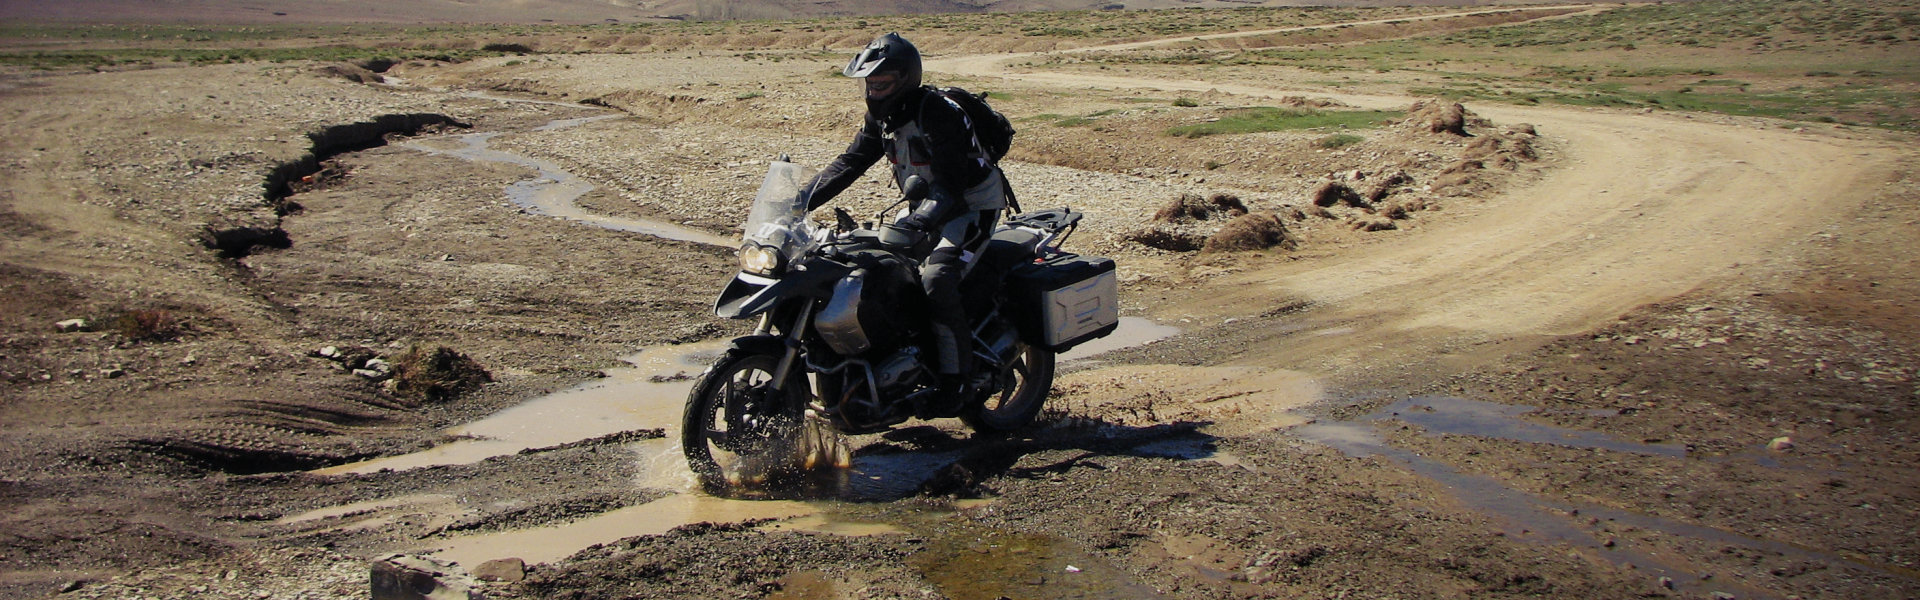 Motociclista conduzindo na lama